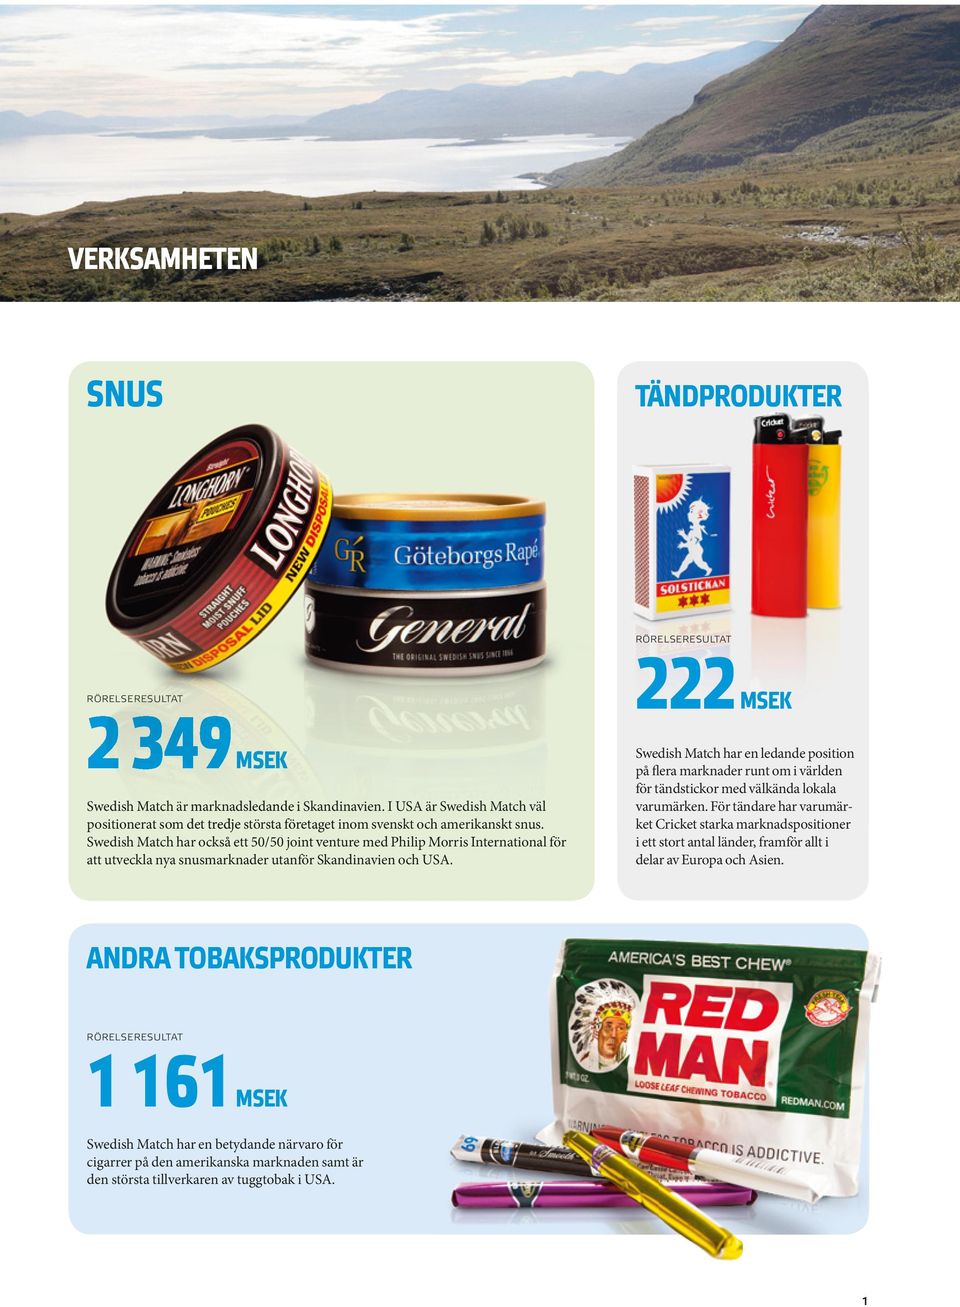 Swedish Match har också ett t 50/50 joint venture med Philip Morris ris International för att utveckla nya snusmarknader utanför Skandinavien och USA.